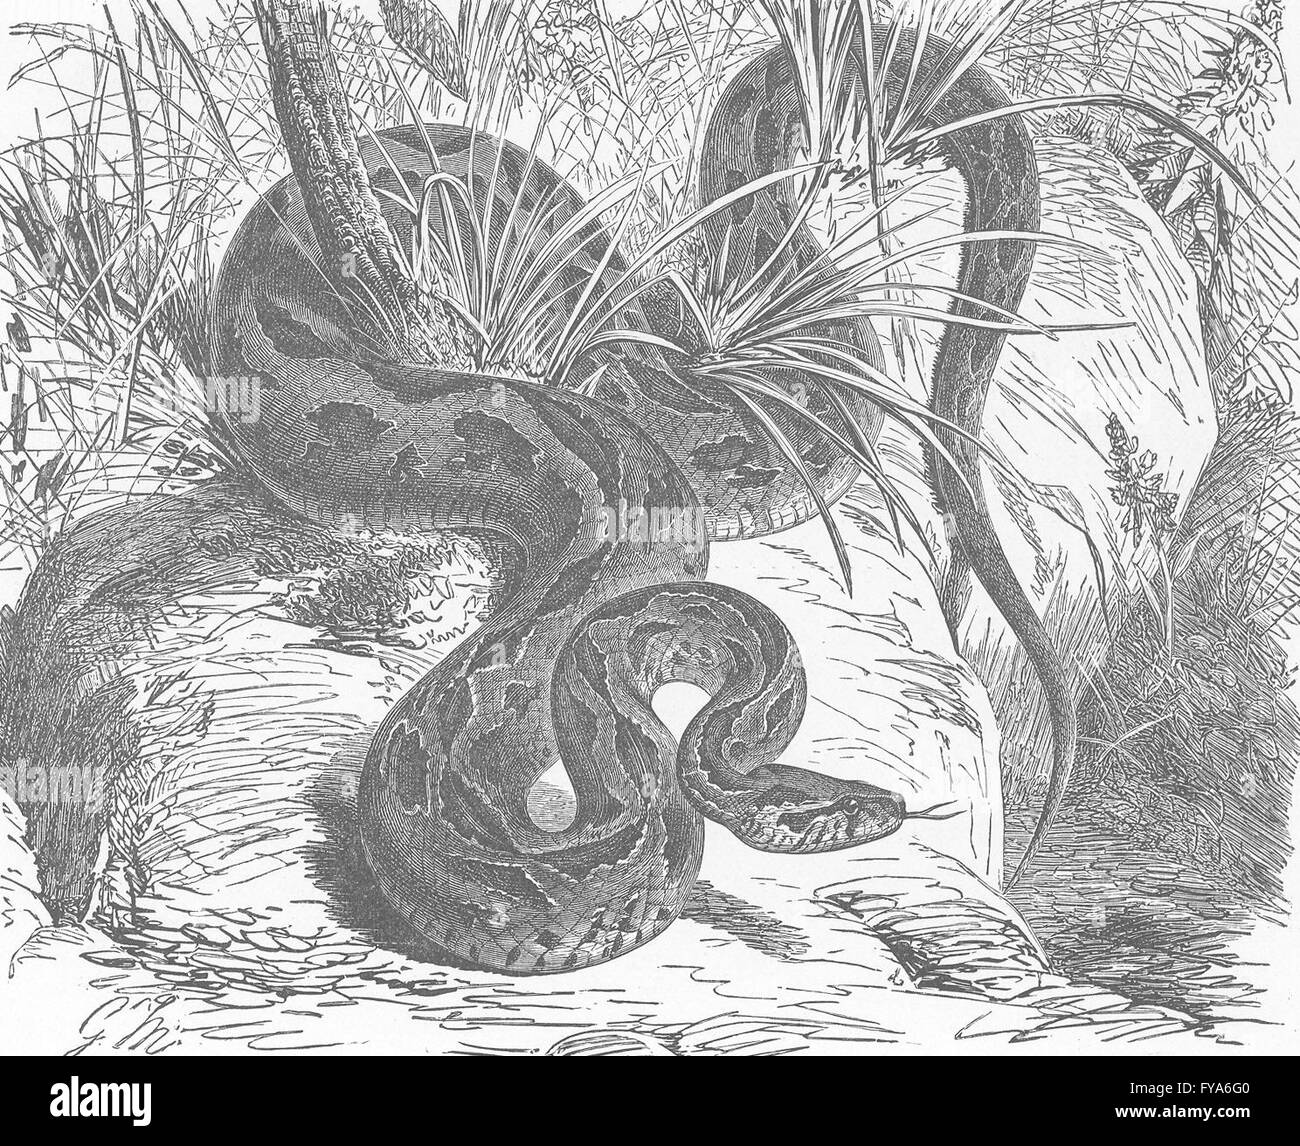 Serpenti: vipera di Russell, antica stampa 1896 Foto Stock